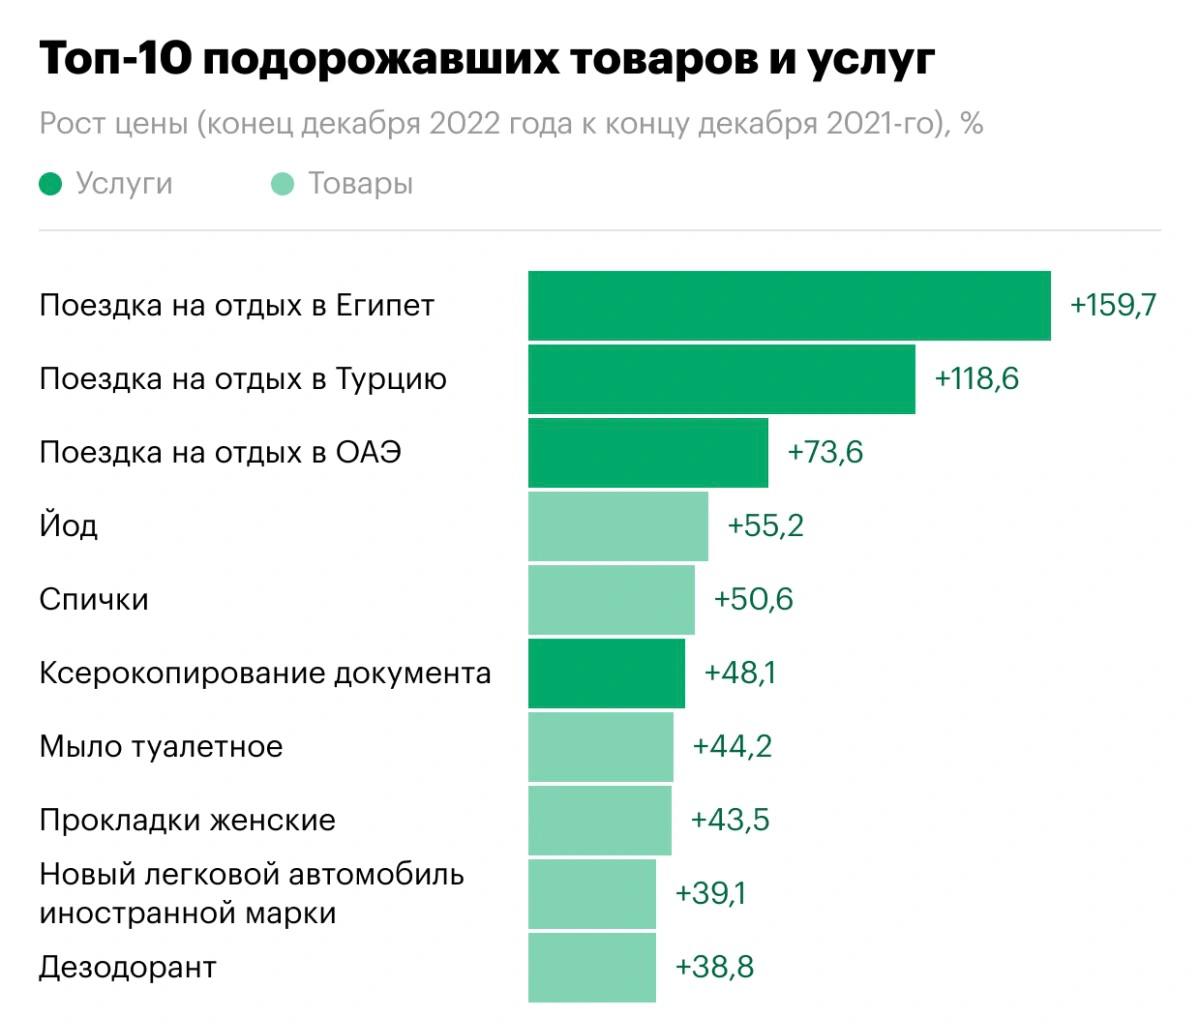 Мебельные компании в россии топ 10